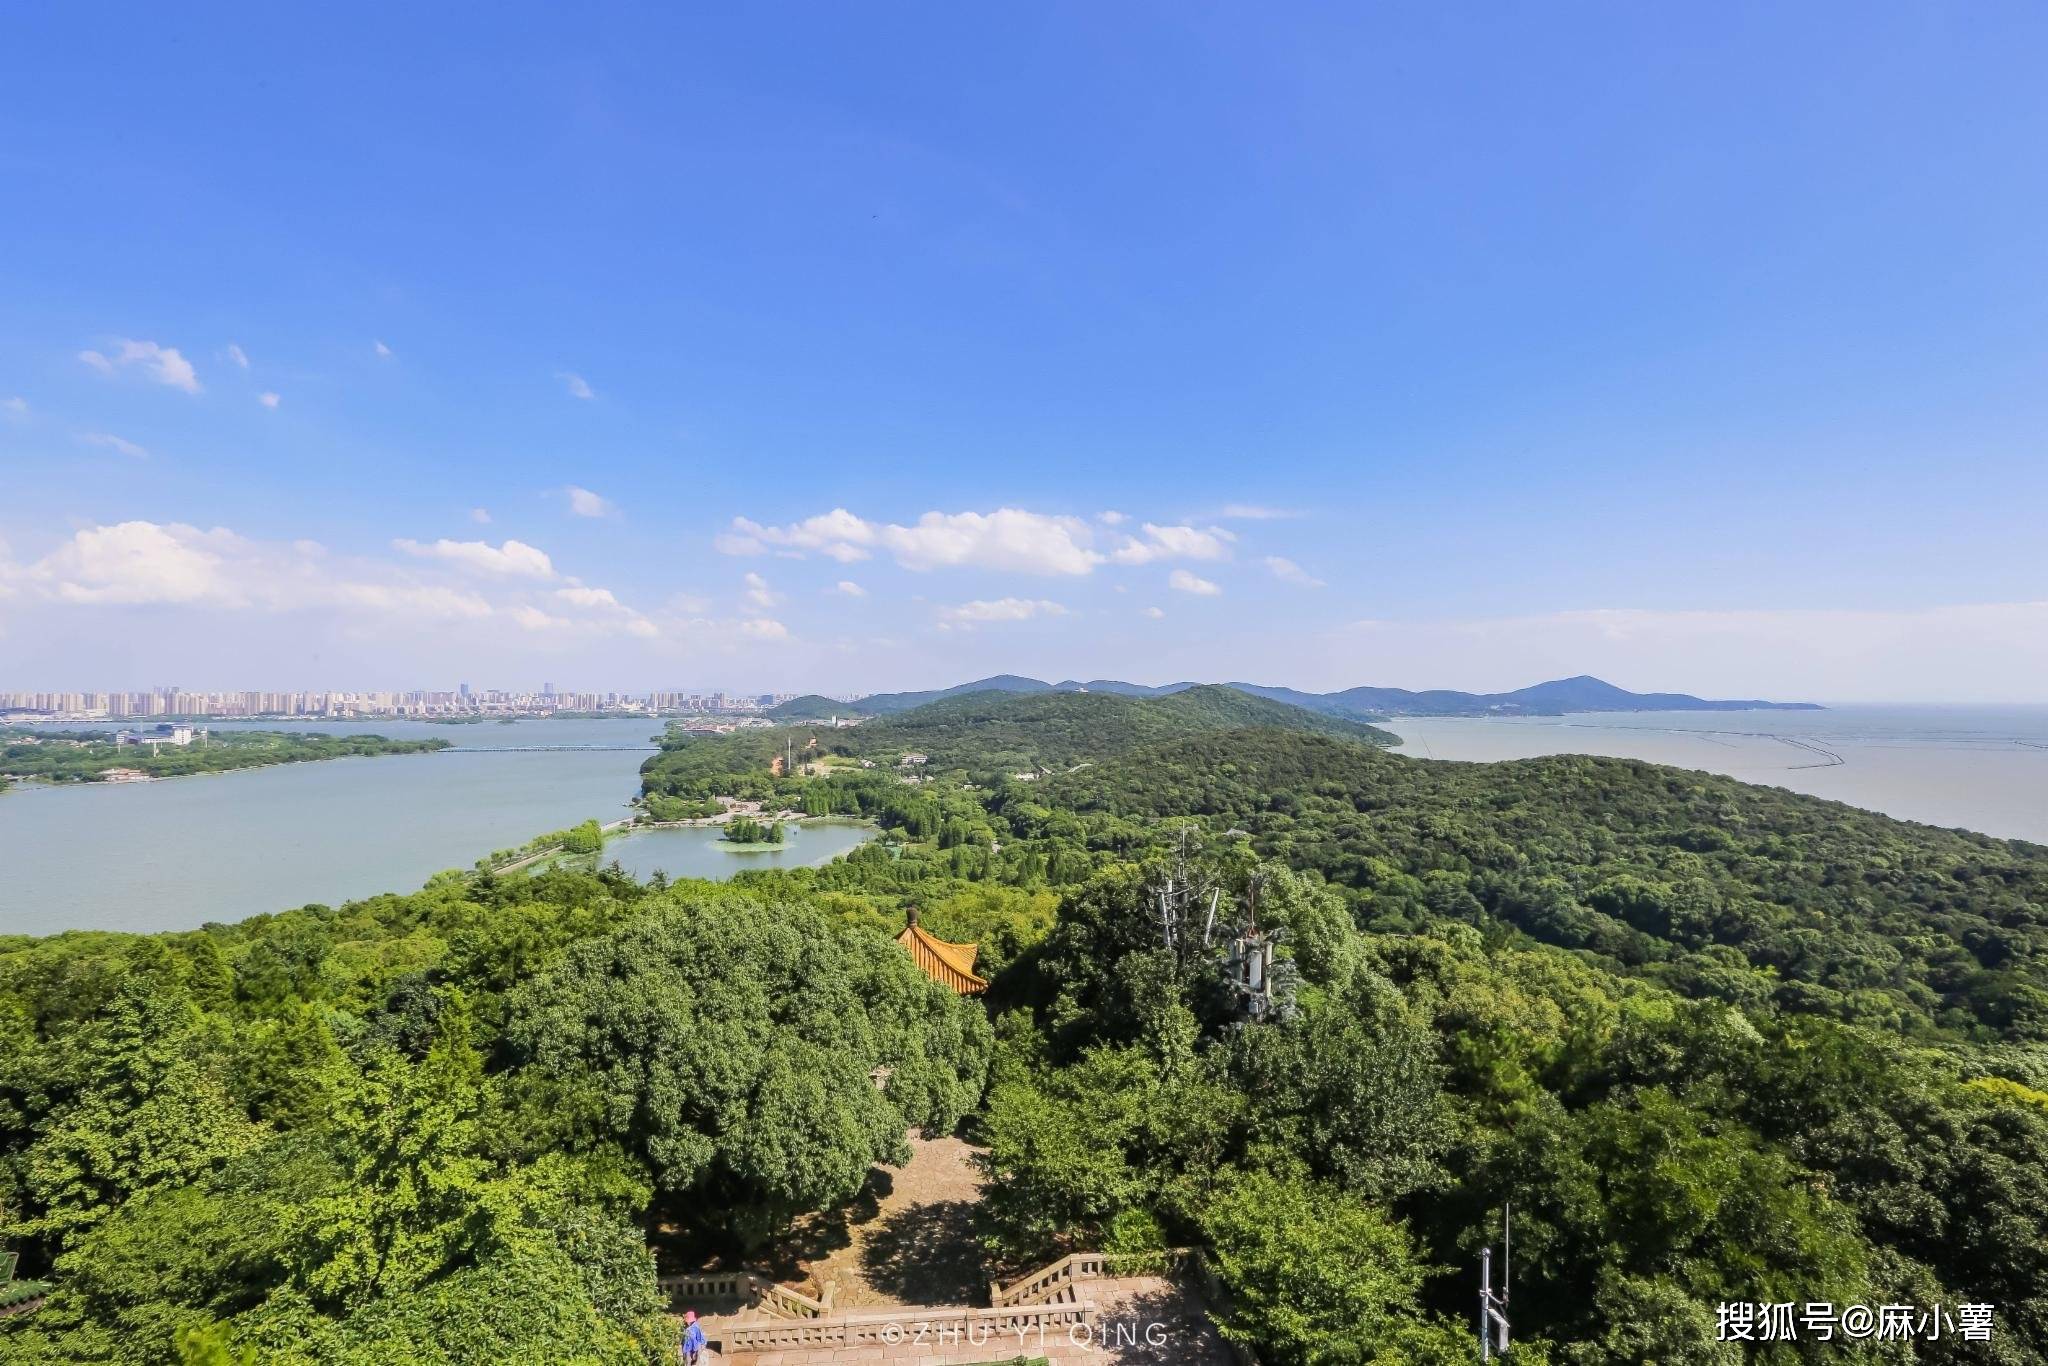 浙江有座城市因太湖得名，却没有苏州无锡有名，地位有点尴尬